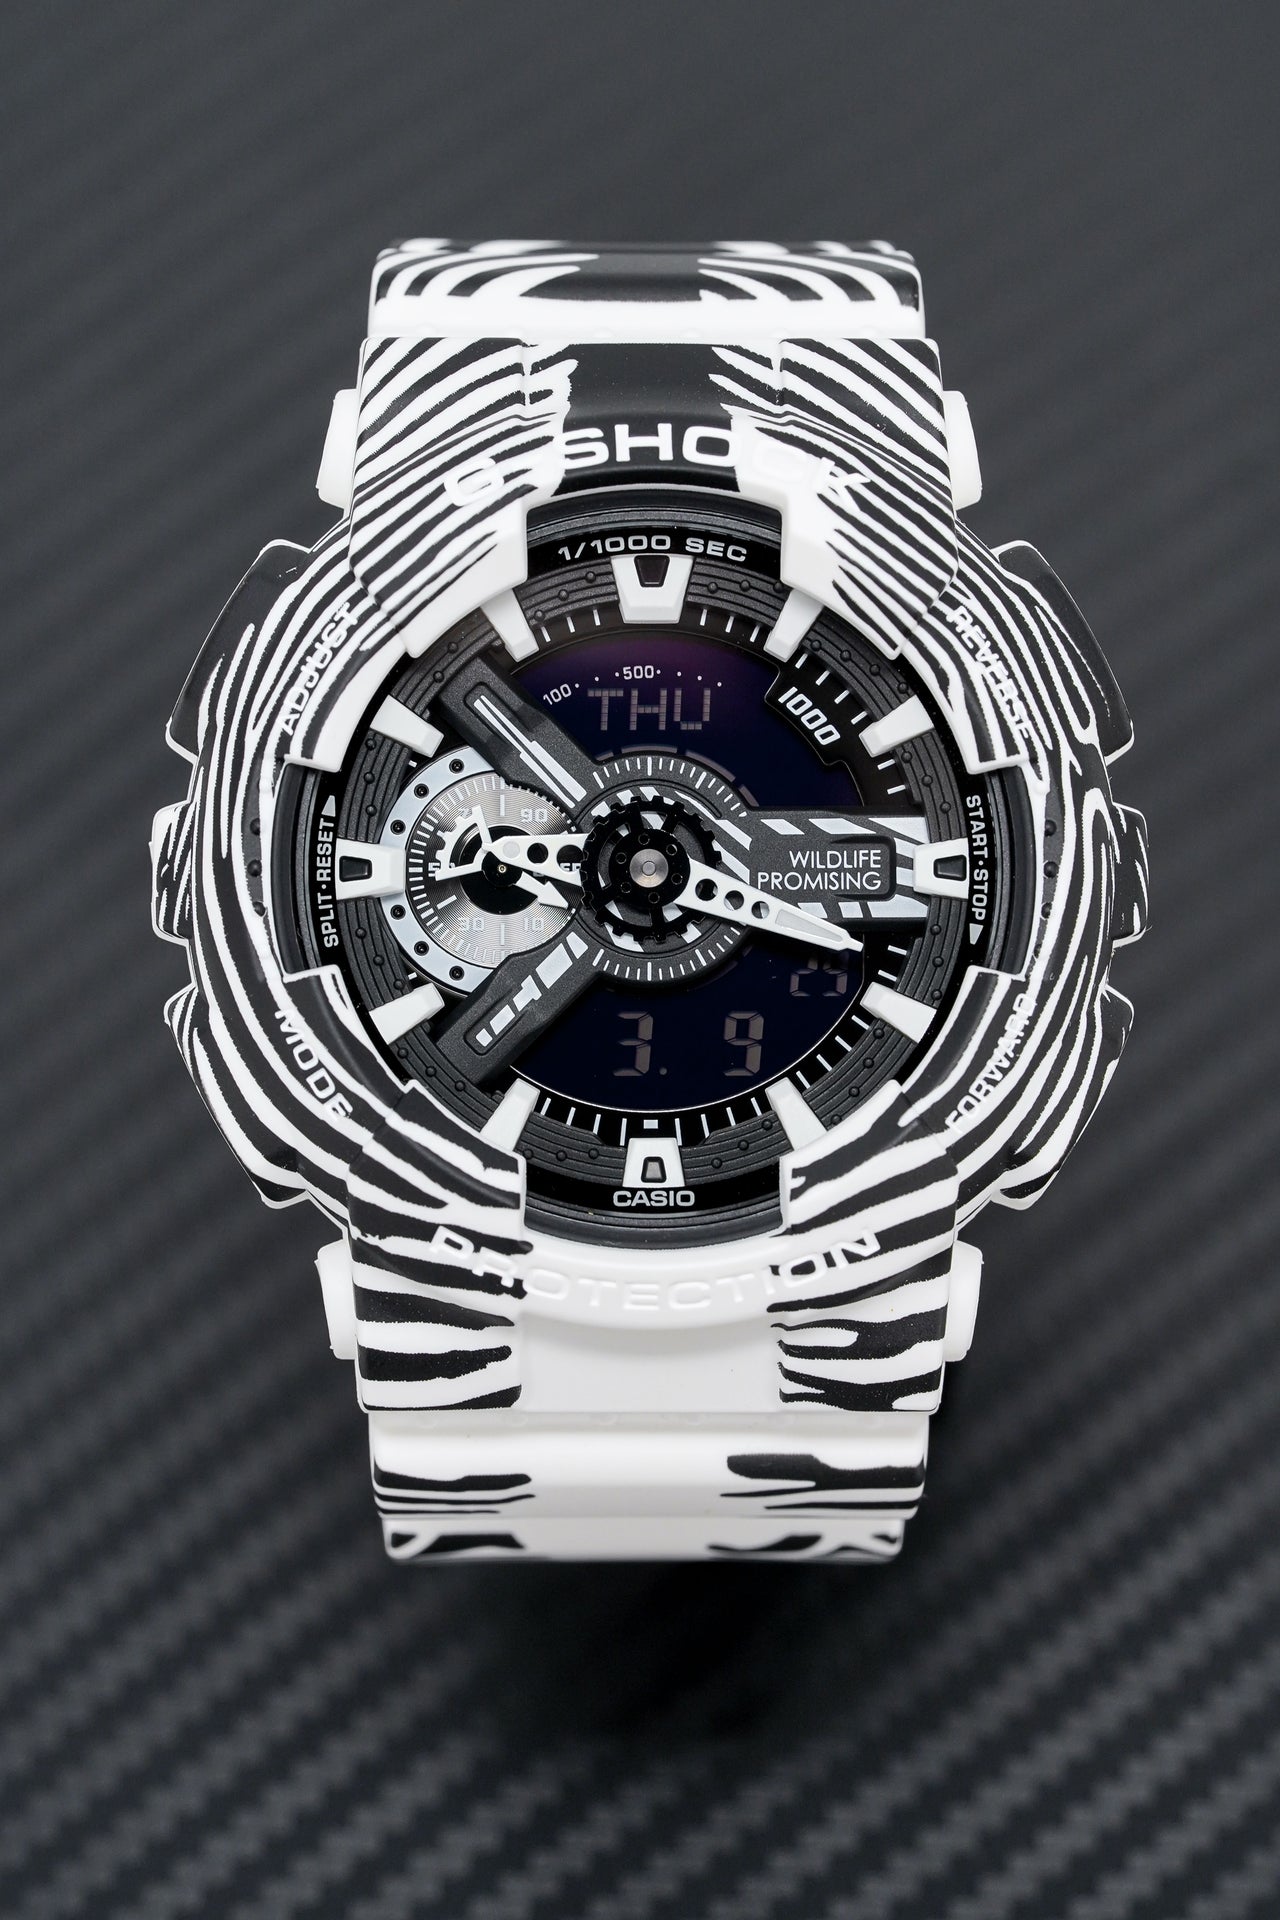 Casio G-Shock Watch Men's Wildlife Promising Limited Edition Zebra GA-110WLP-7ADR